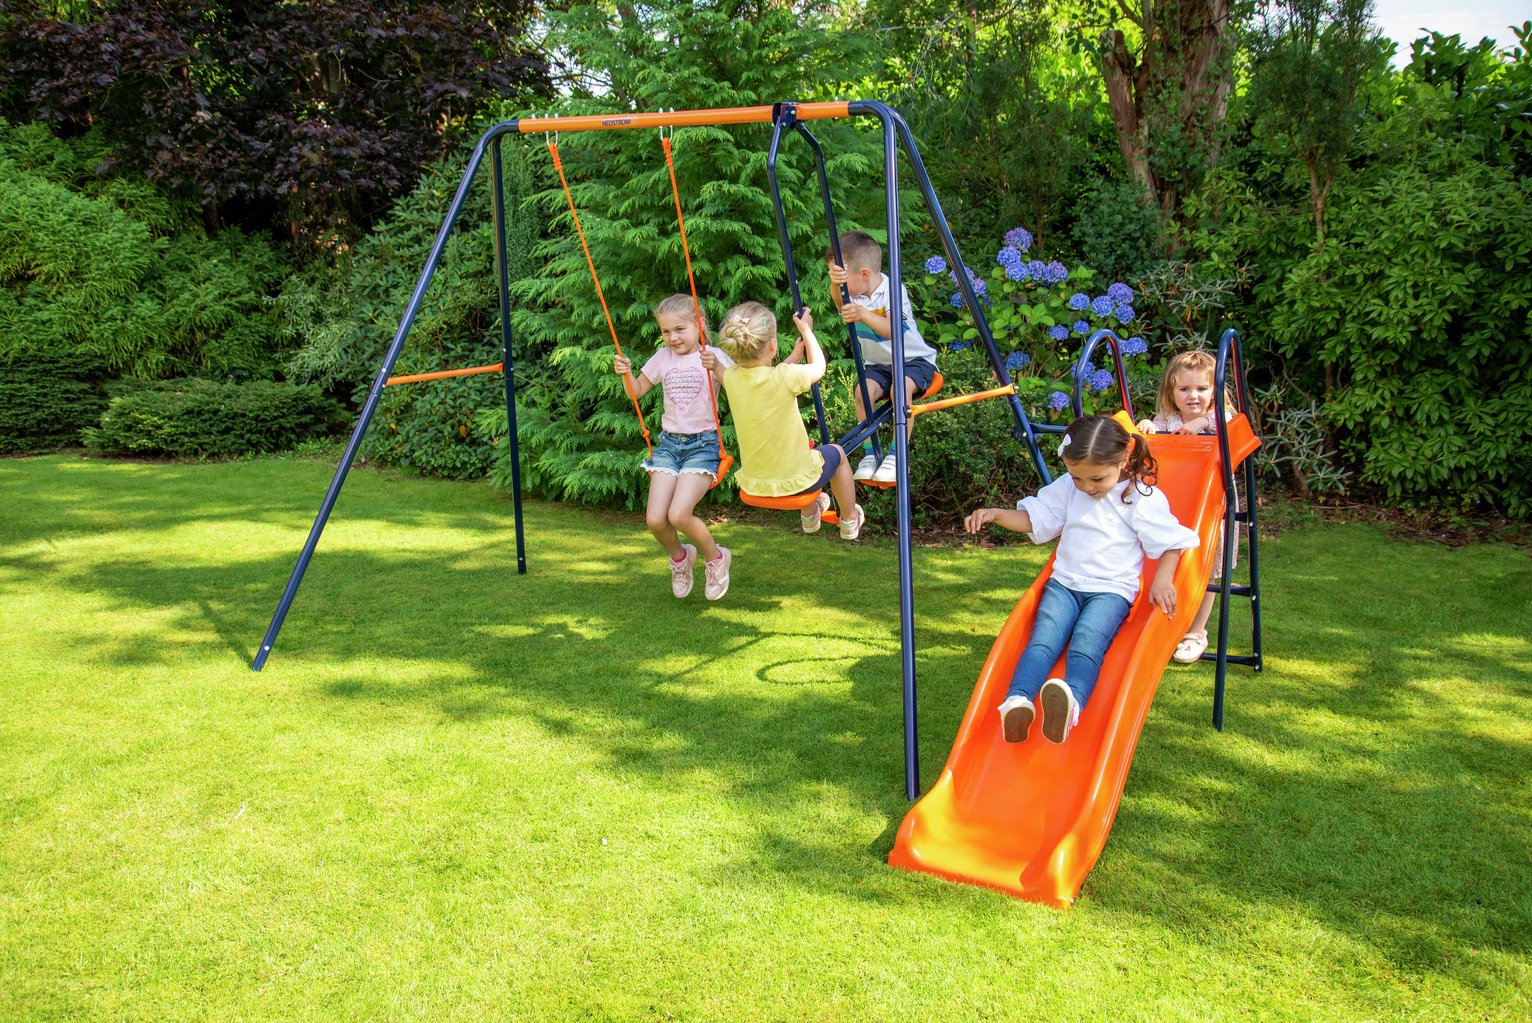 Hedstrom Saturn Kids Garden Glider, Swing Set and Slide review